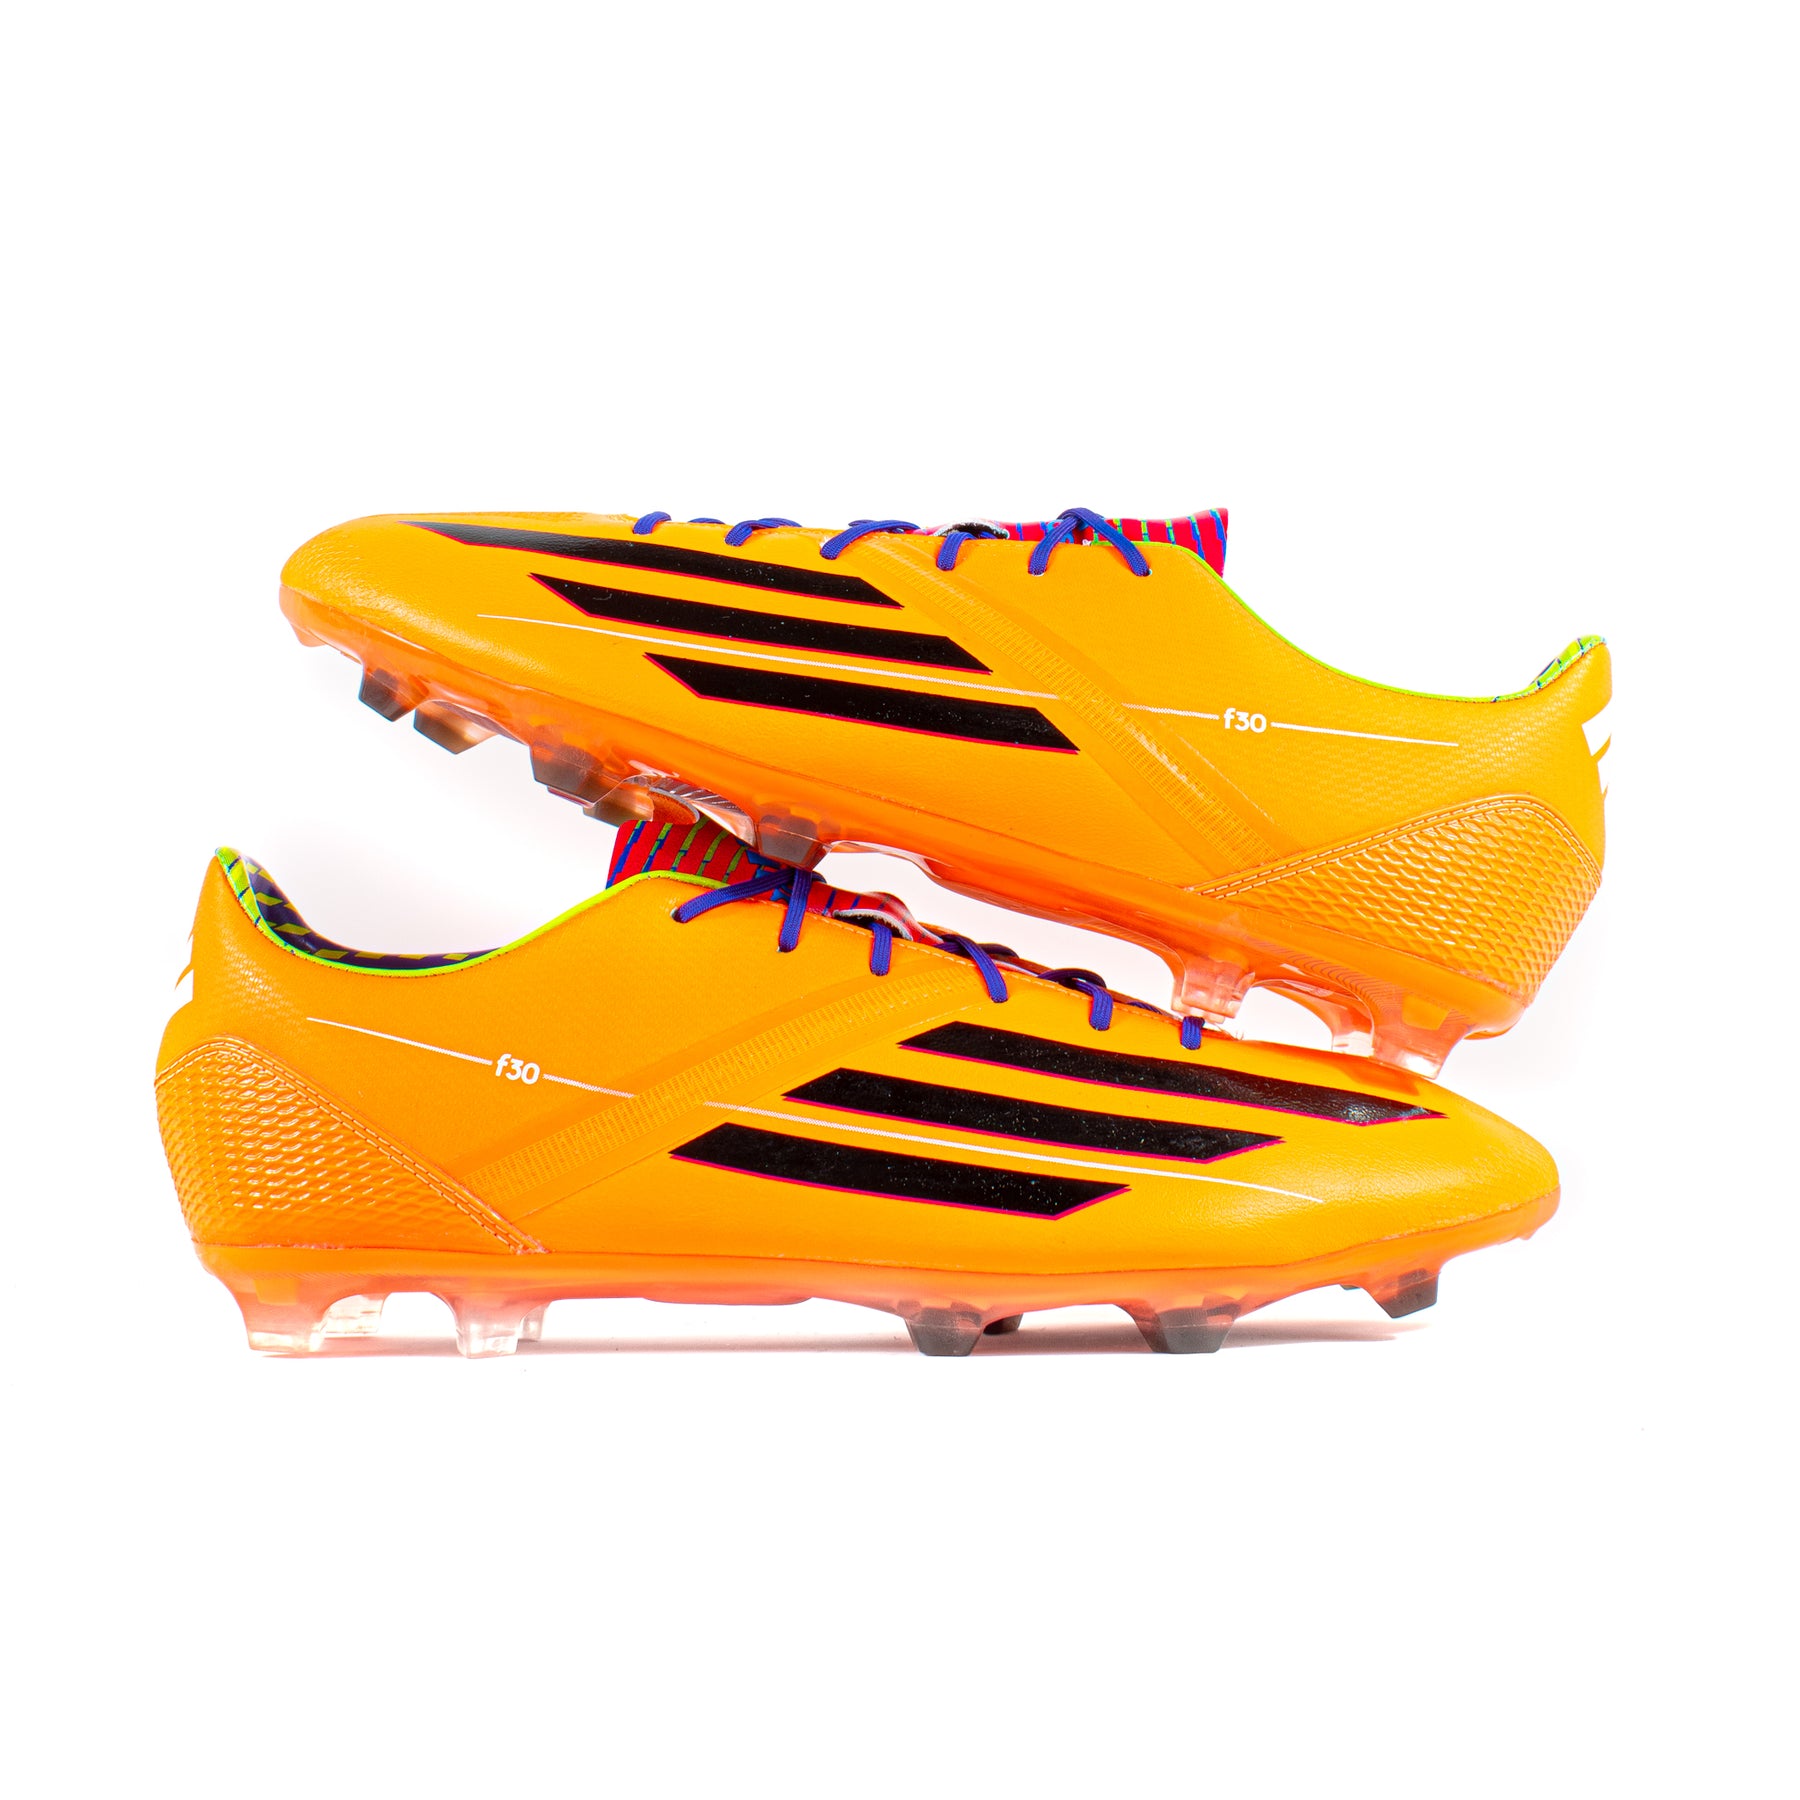 Adidas Samba FG – Soccer Cleats